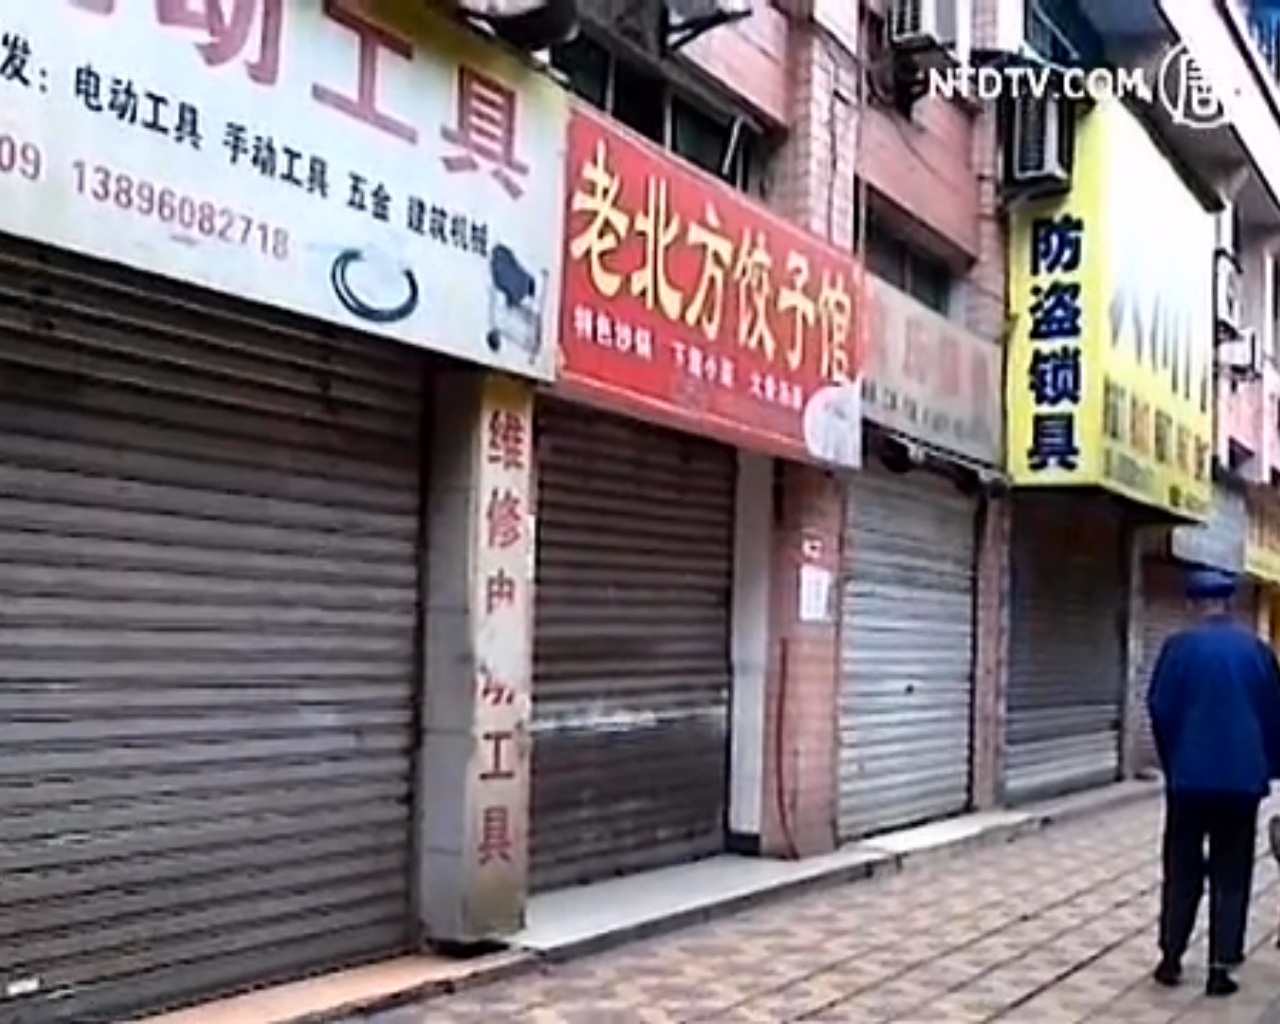 Proteste in Chongqing: Geschäftsstreik als Antwort auf Polizeigewalt